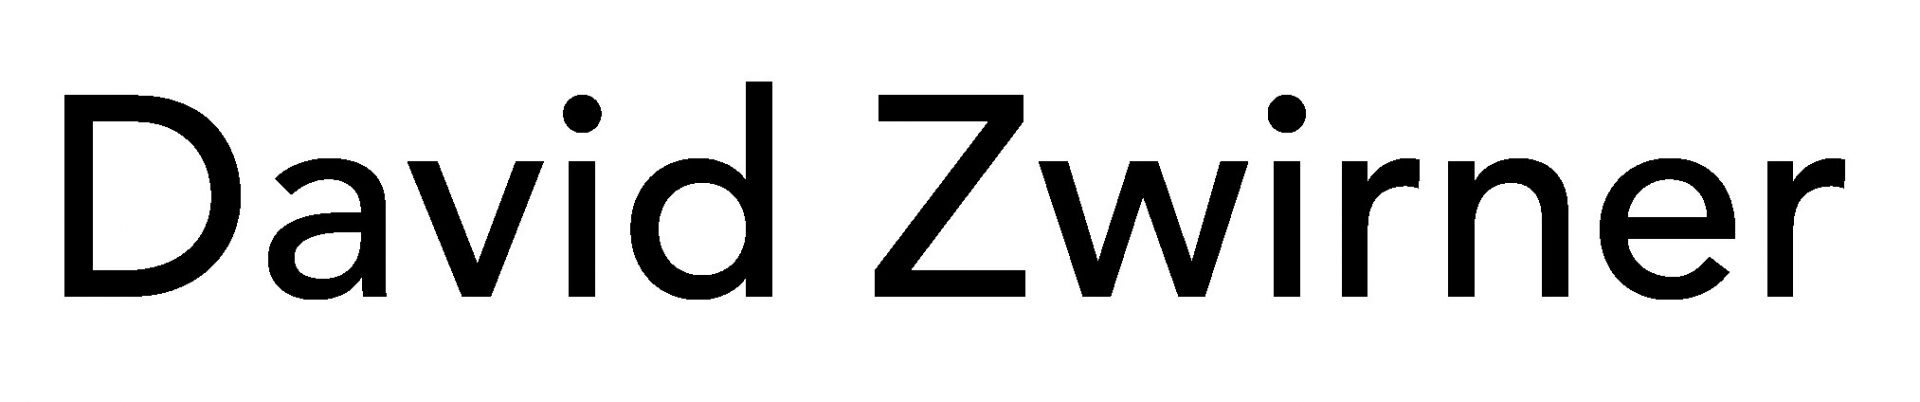 David-Zwirner-logo-1.jpg